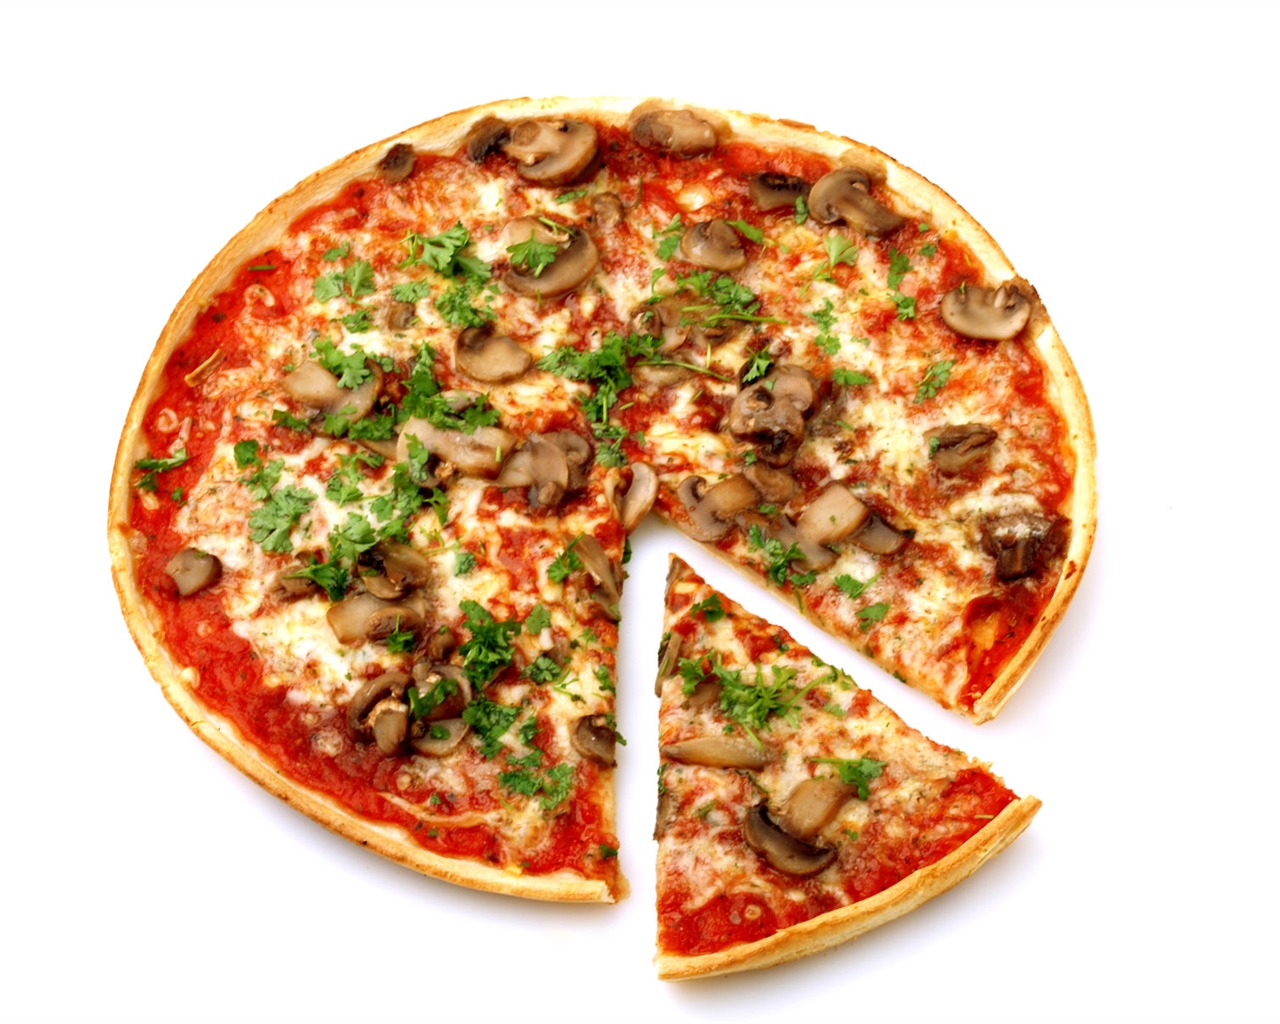 Fondos de pizzerías de Alimentos (4) #2 - 1280x1024